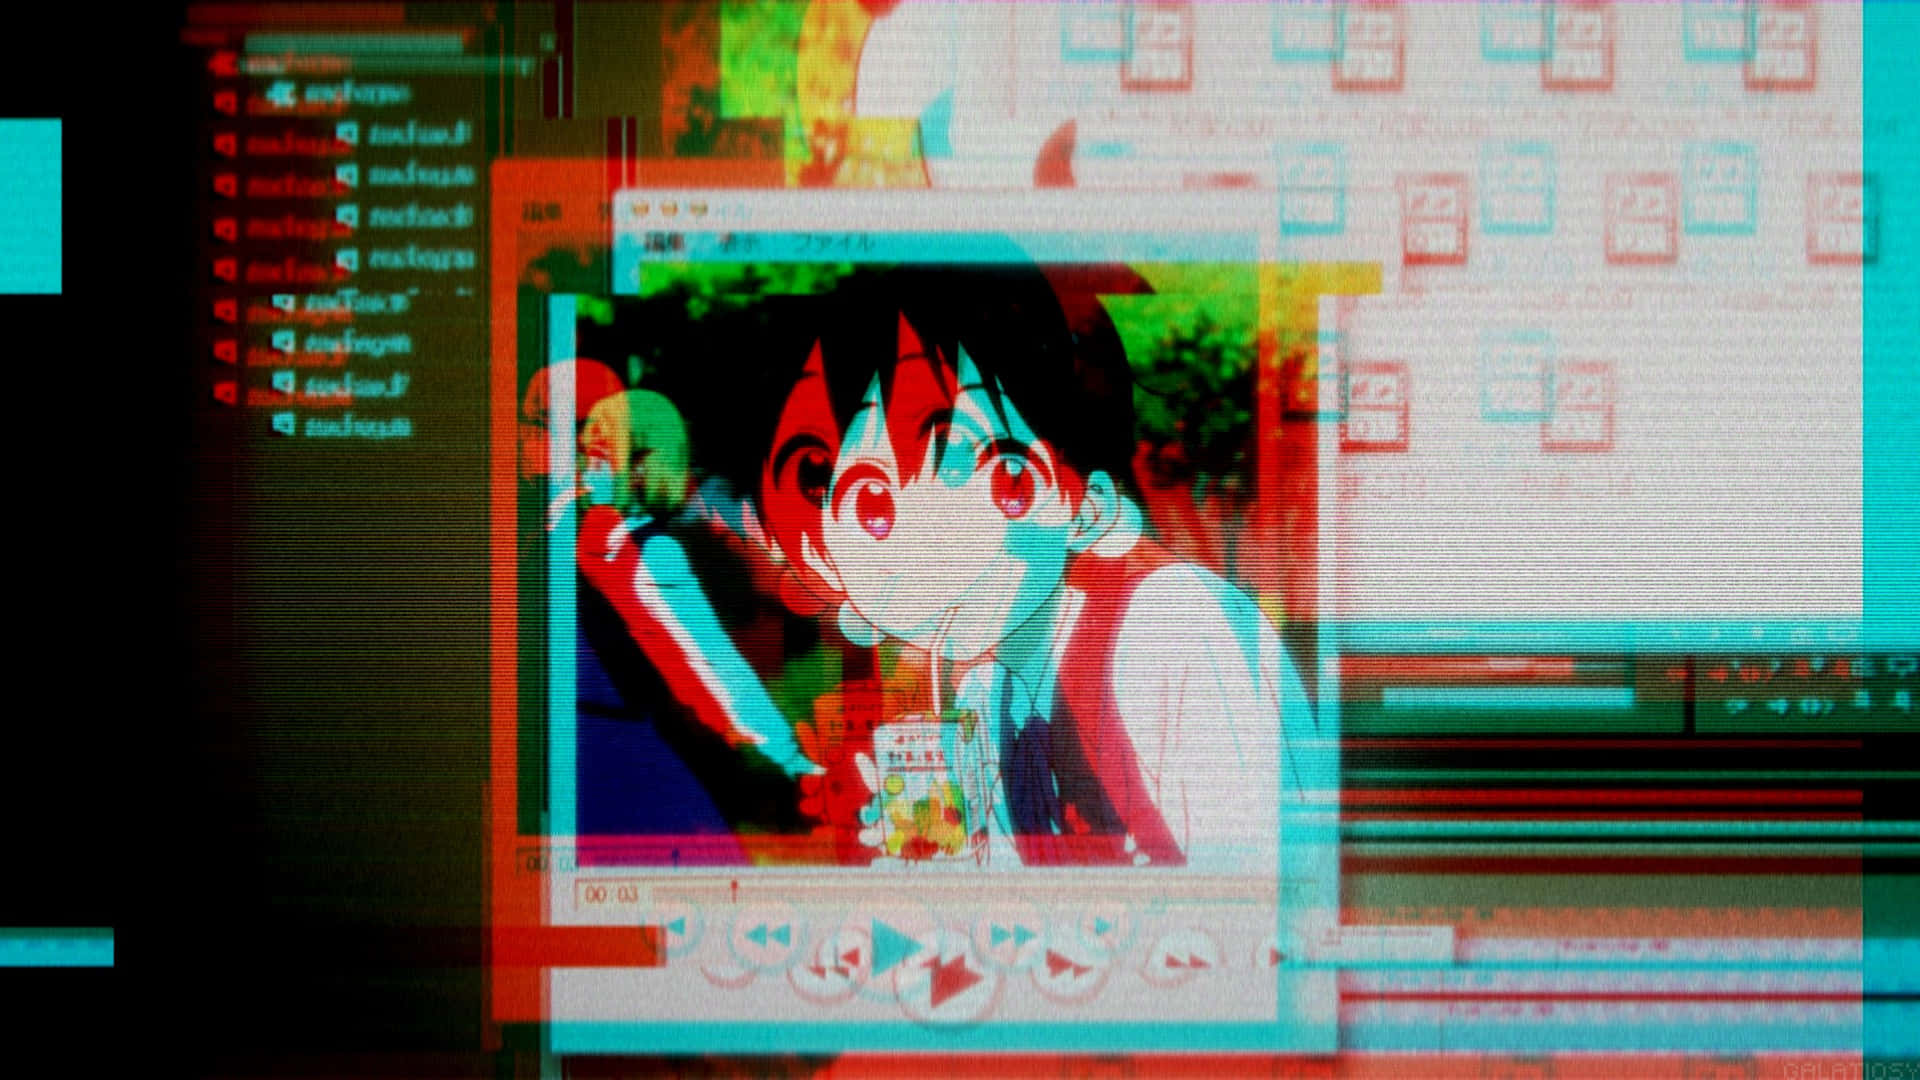 Unapantalla De Computadora Con Personajes De Anime En Ella.